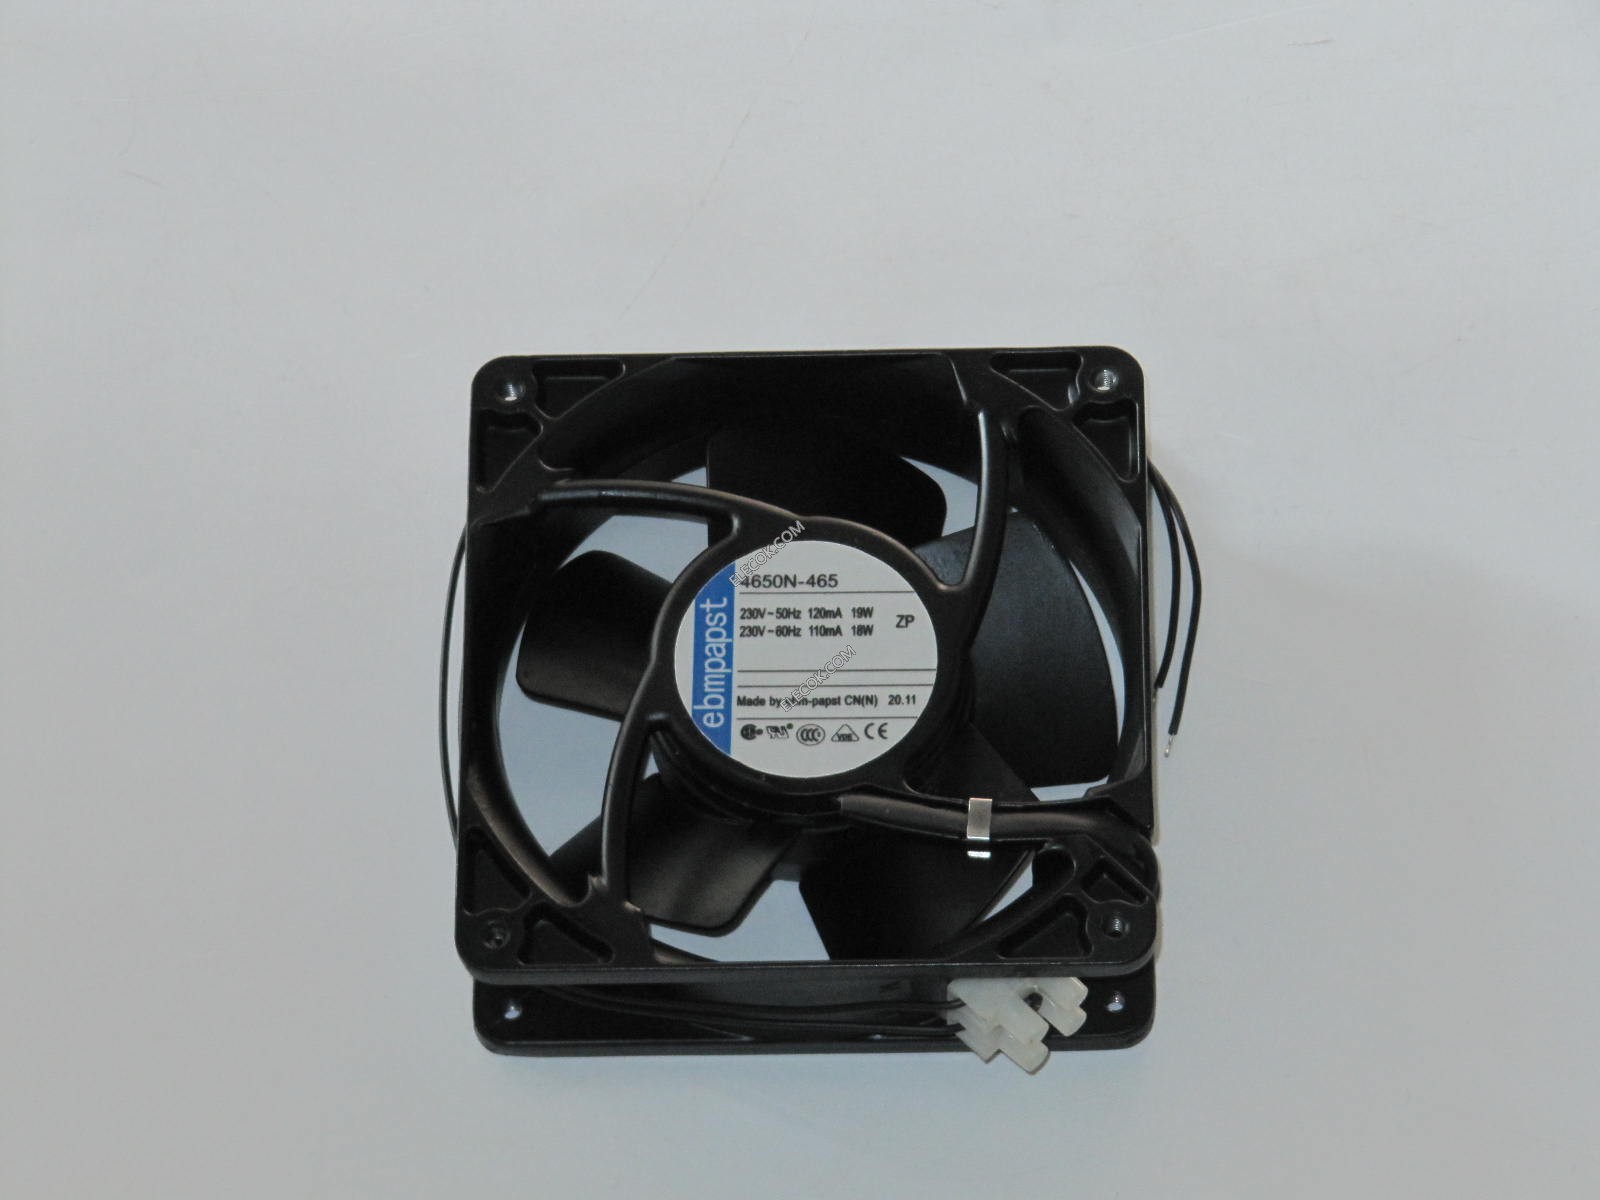 4650N-465 4-inch AC220V high-Temperature Radiator Fan 6months Warranty Send by DHL